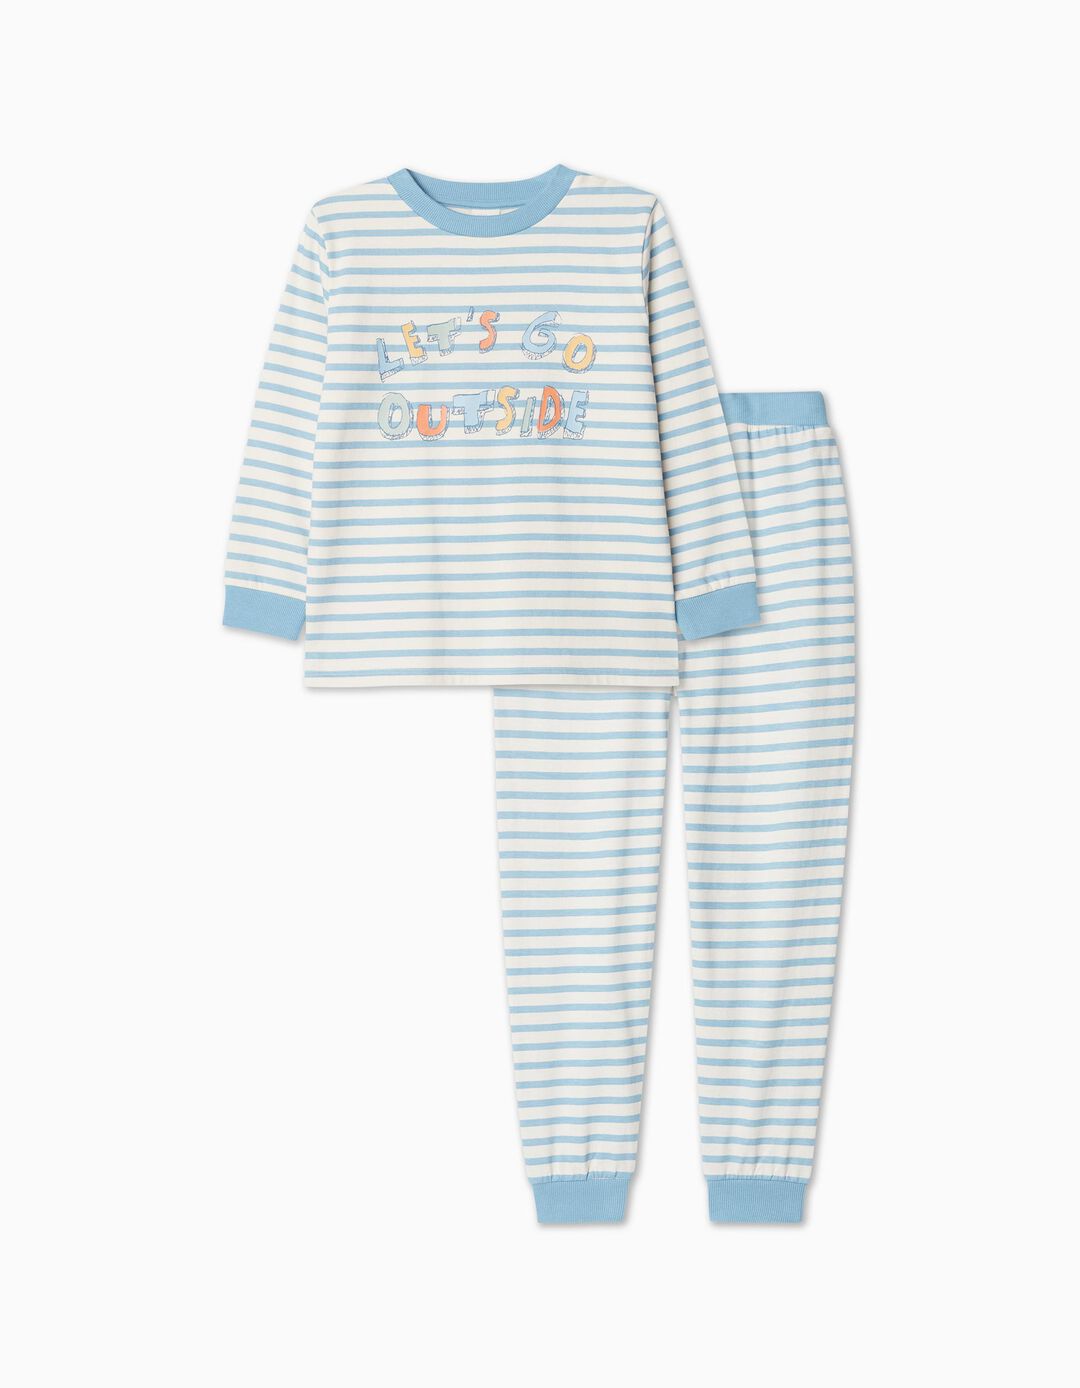 Striped Pajamas, Boy, Light Blue